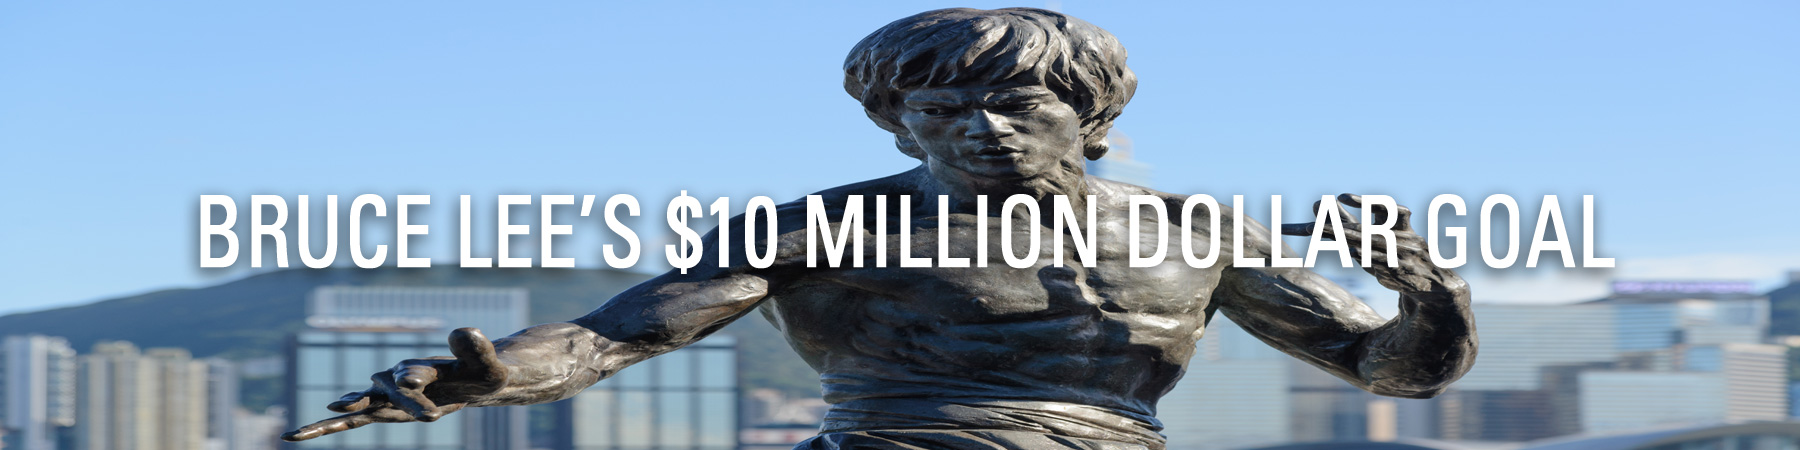 Bruce Lee’s $10 Million Dollar Goal